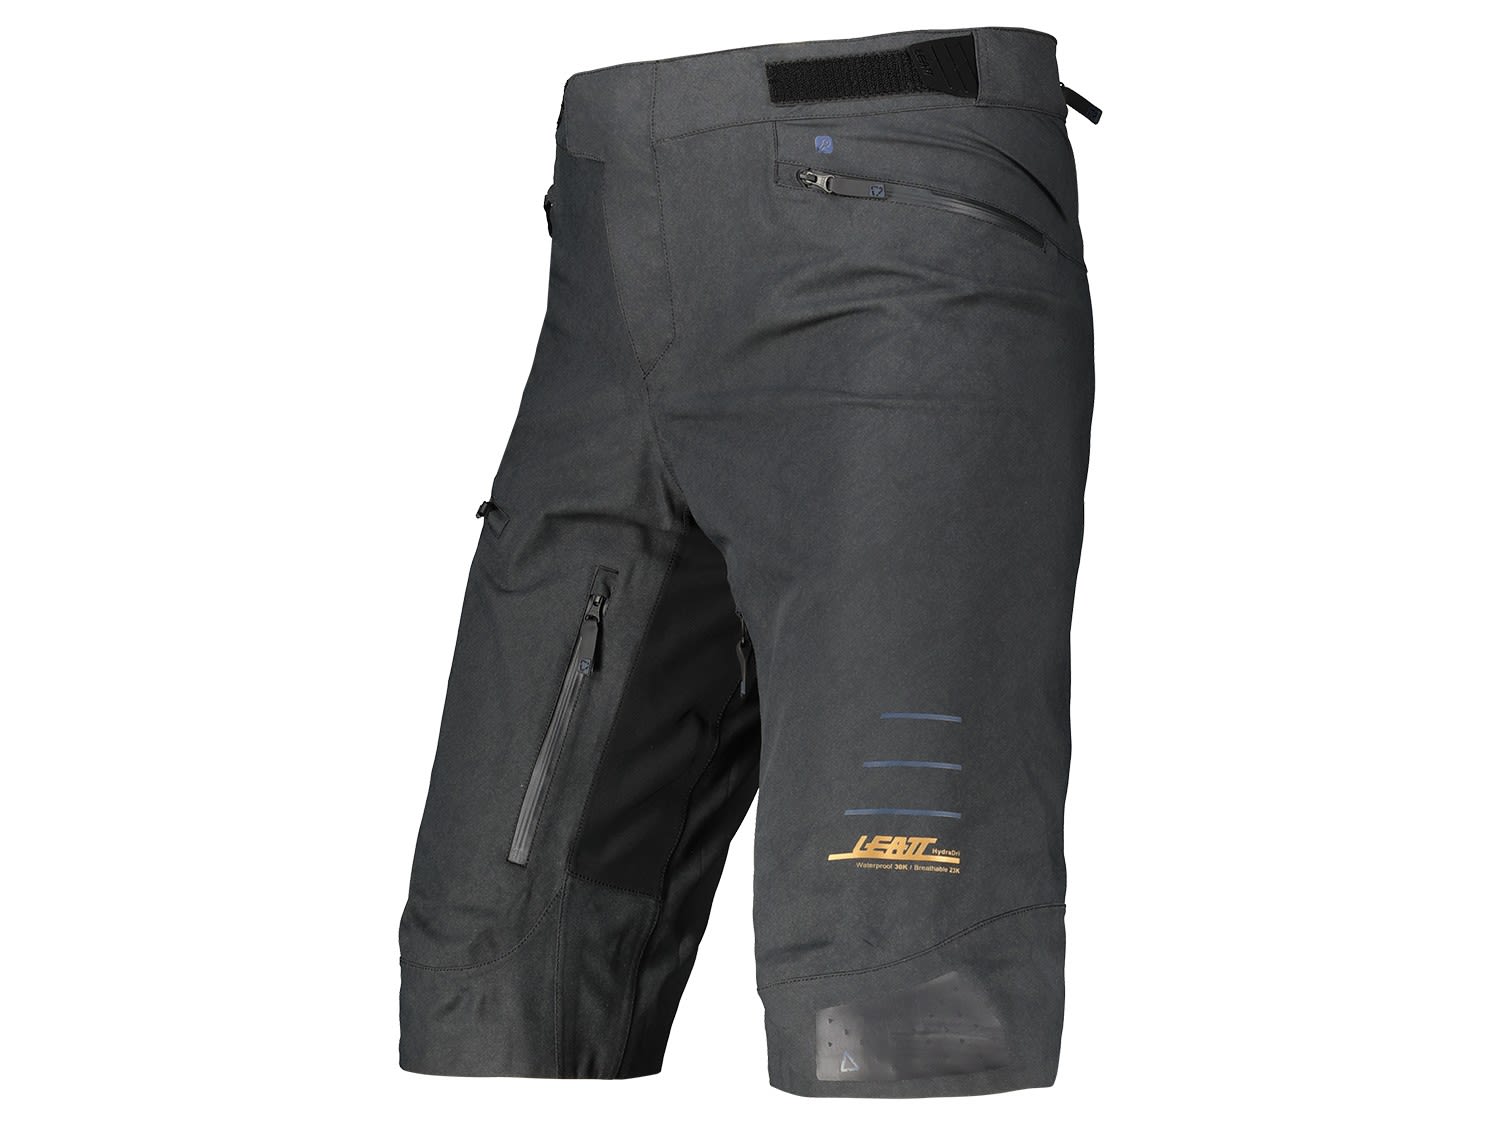 Leatt MTB All Mountain 5-0 Shorts Schwarz- Male Shorts- Grsse S - Farbe Black unter Leatt